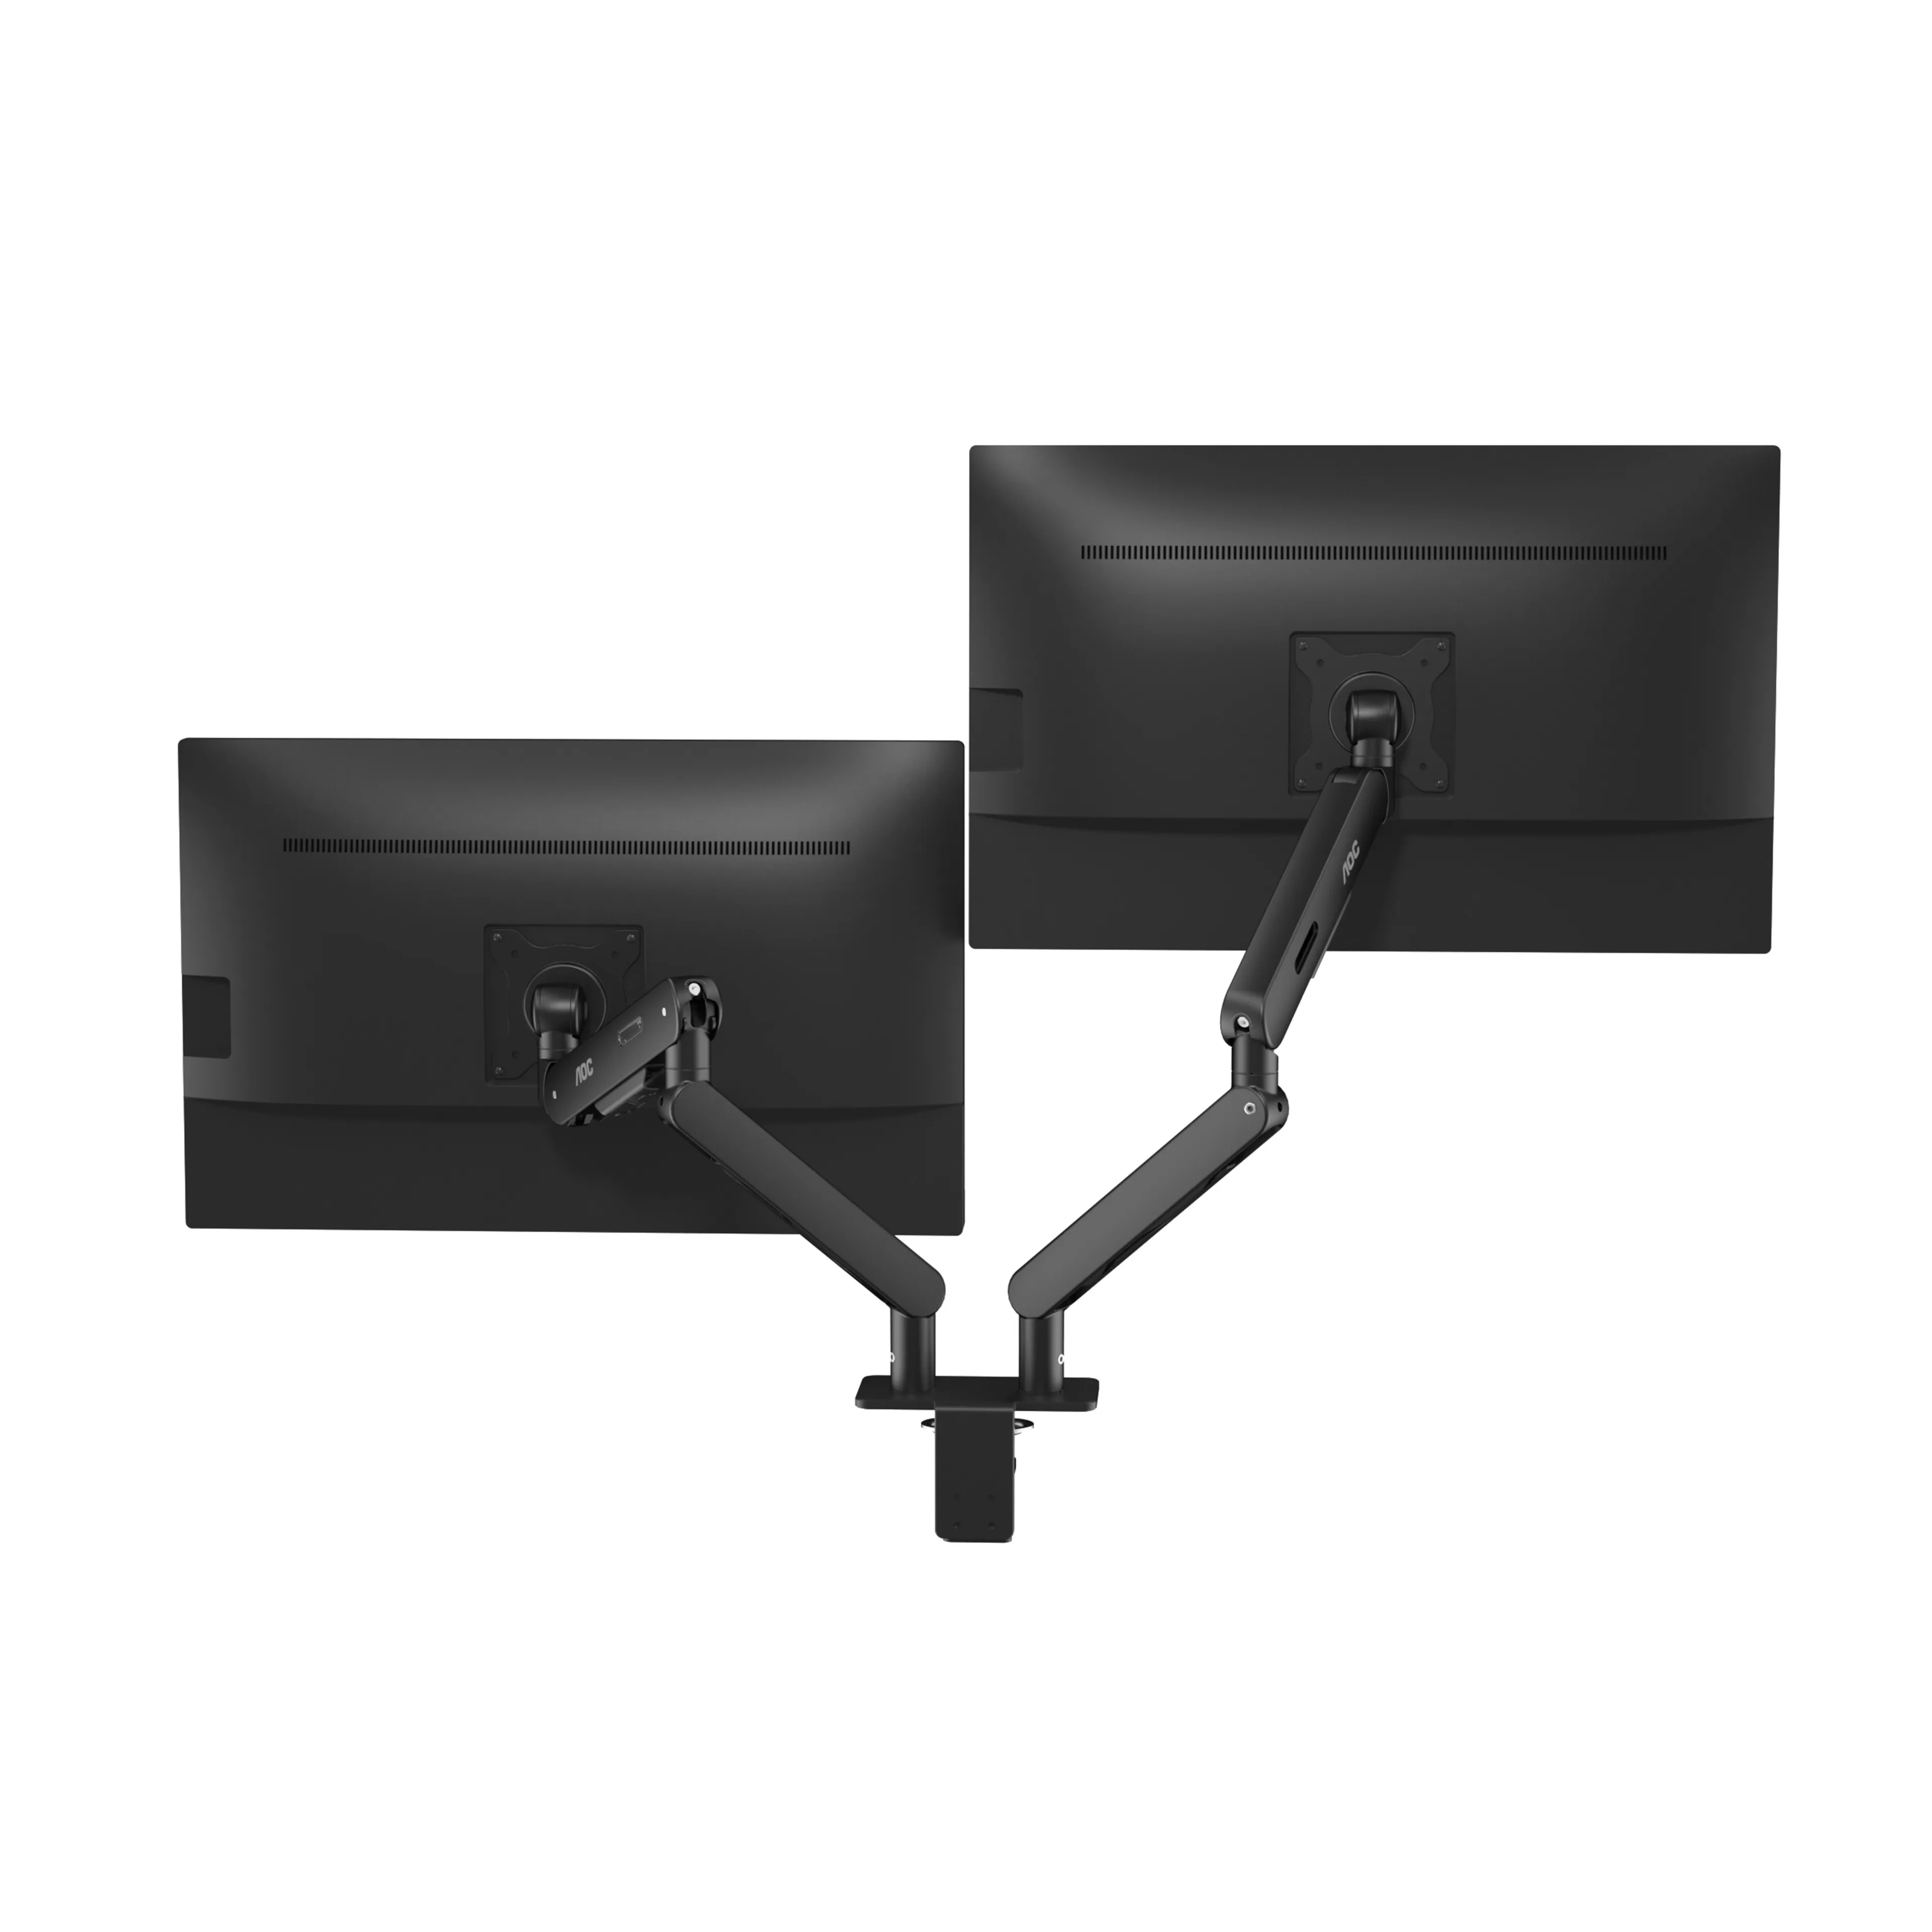 Vente AOC AM420 Dual Monitor Arm - black AOC au meilleur prix - visuel 4